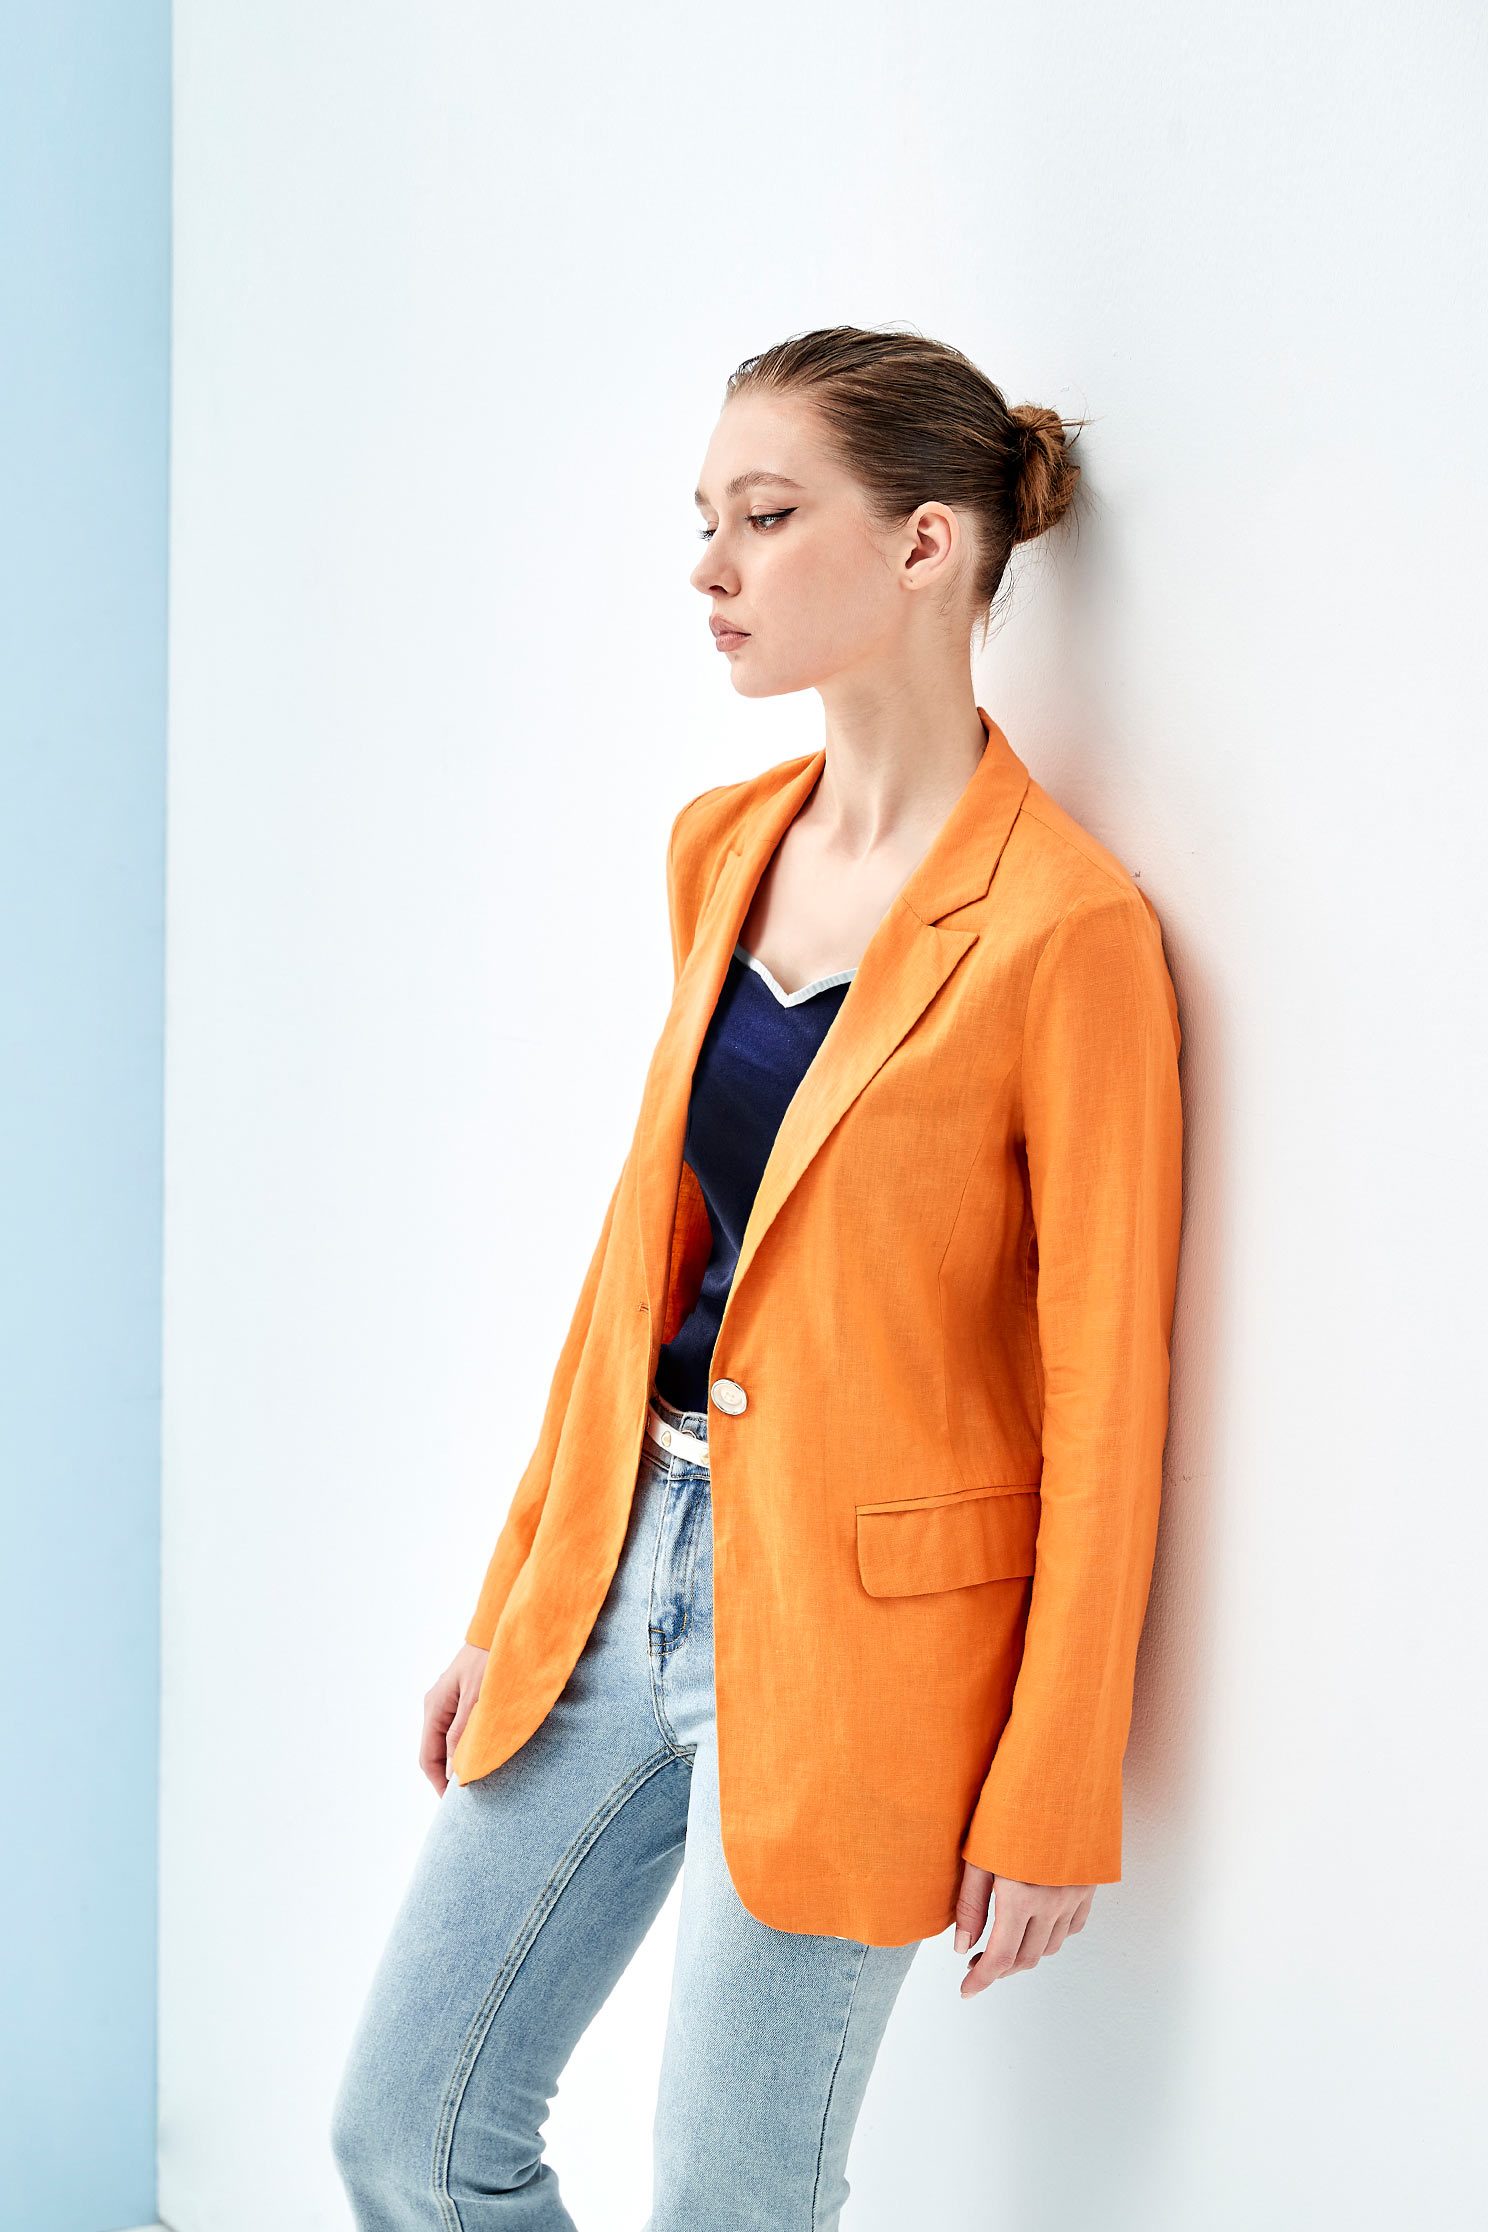 橘色棉麻經典西裝外套,橘色 外套,西裝外套 口袋,素色 外套橘色棉麻經典西裝外套,外套,春夏穿搭,西裝外套,解封企劃